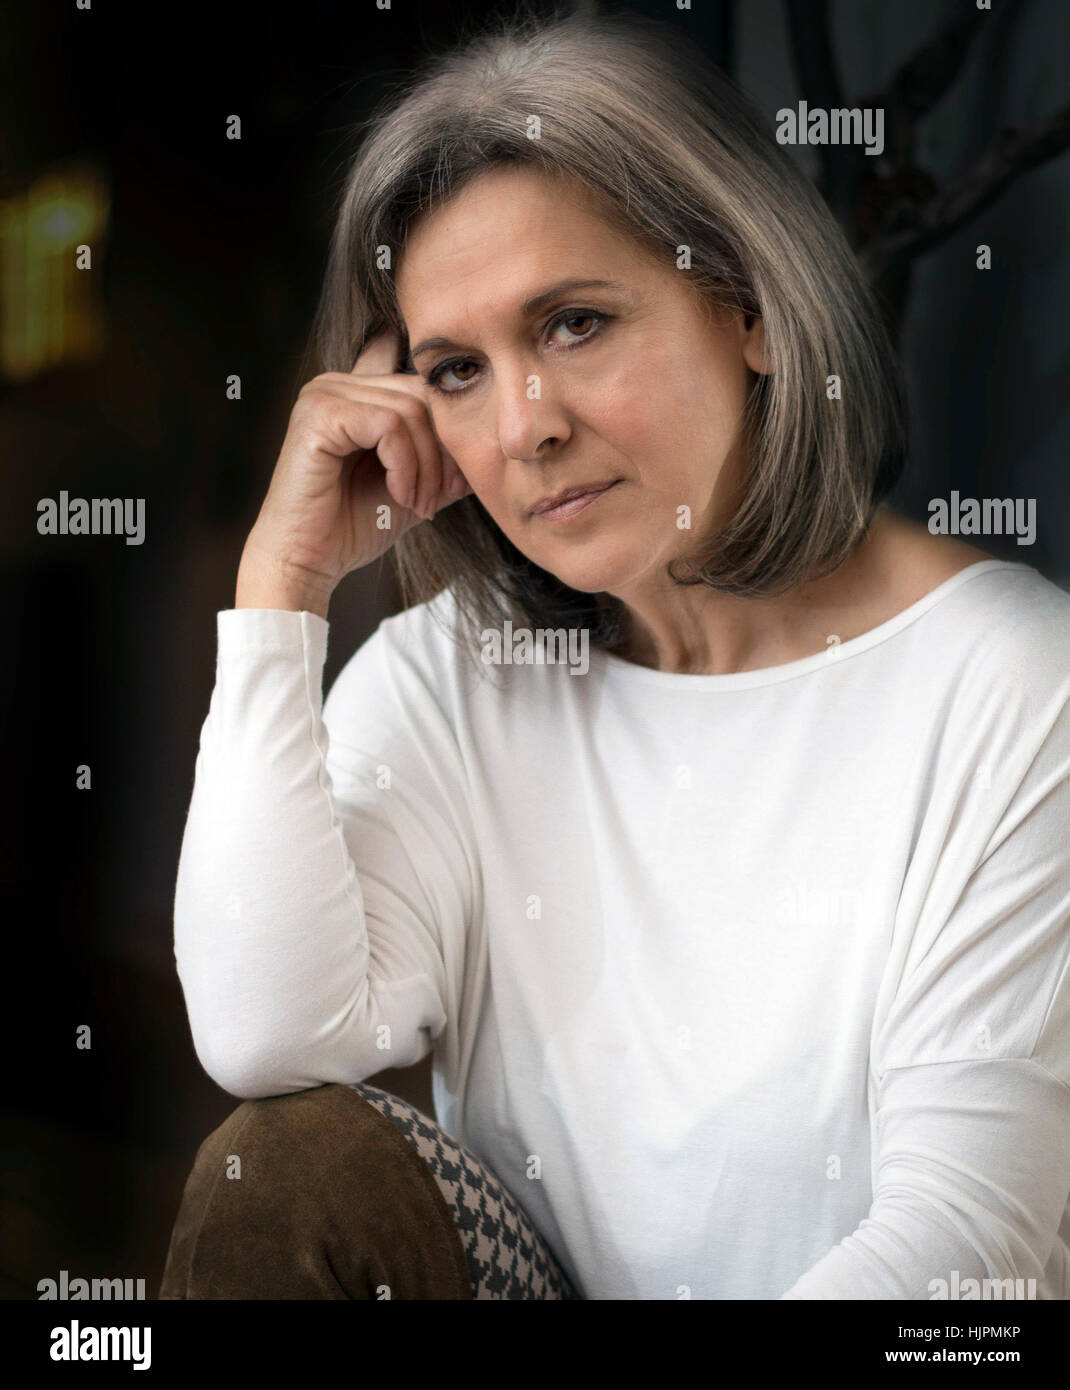 Reife Frau sucht seriöse, Denken, arm auf Knie, Hand auf die Wange  Stockfotografie - Alamy